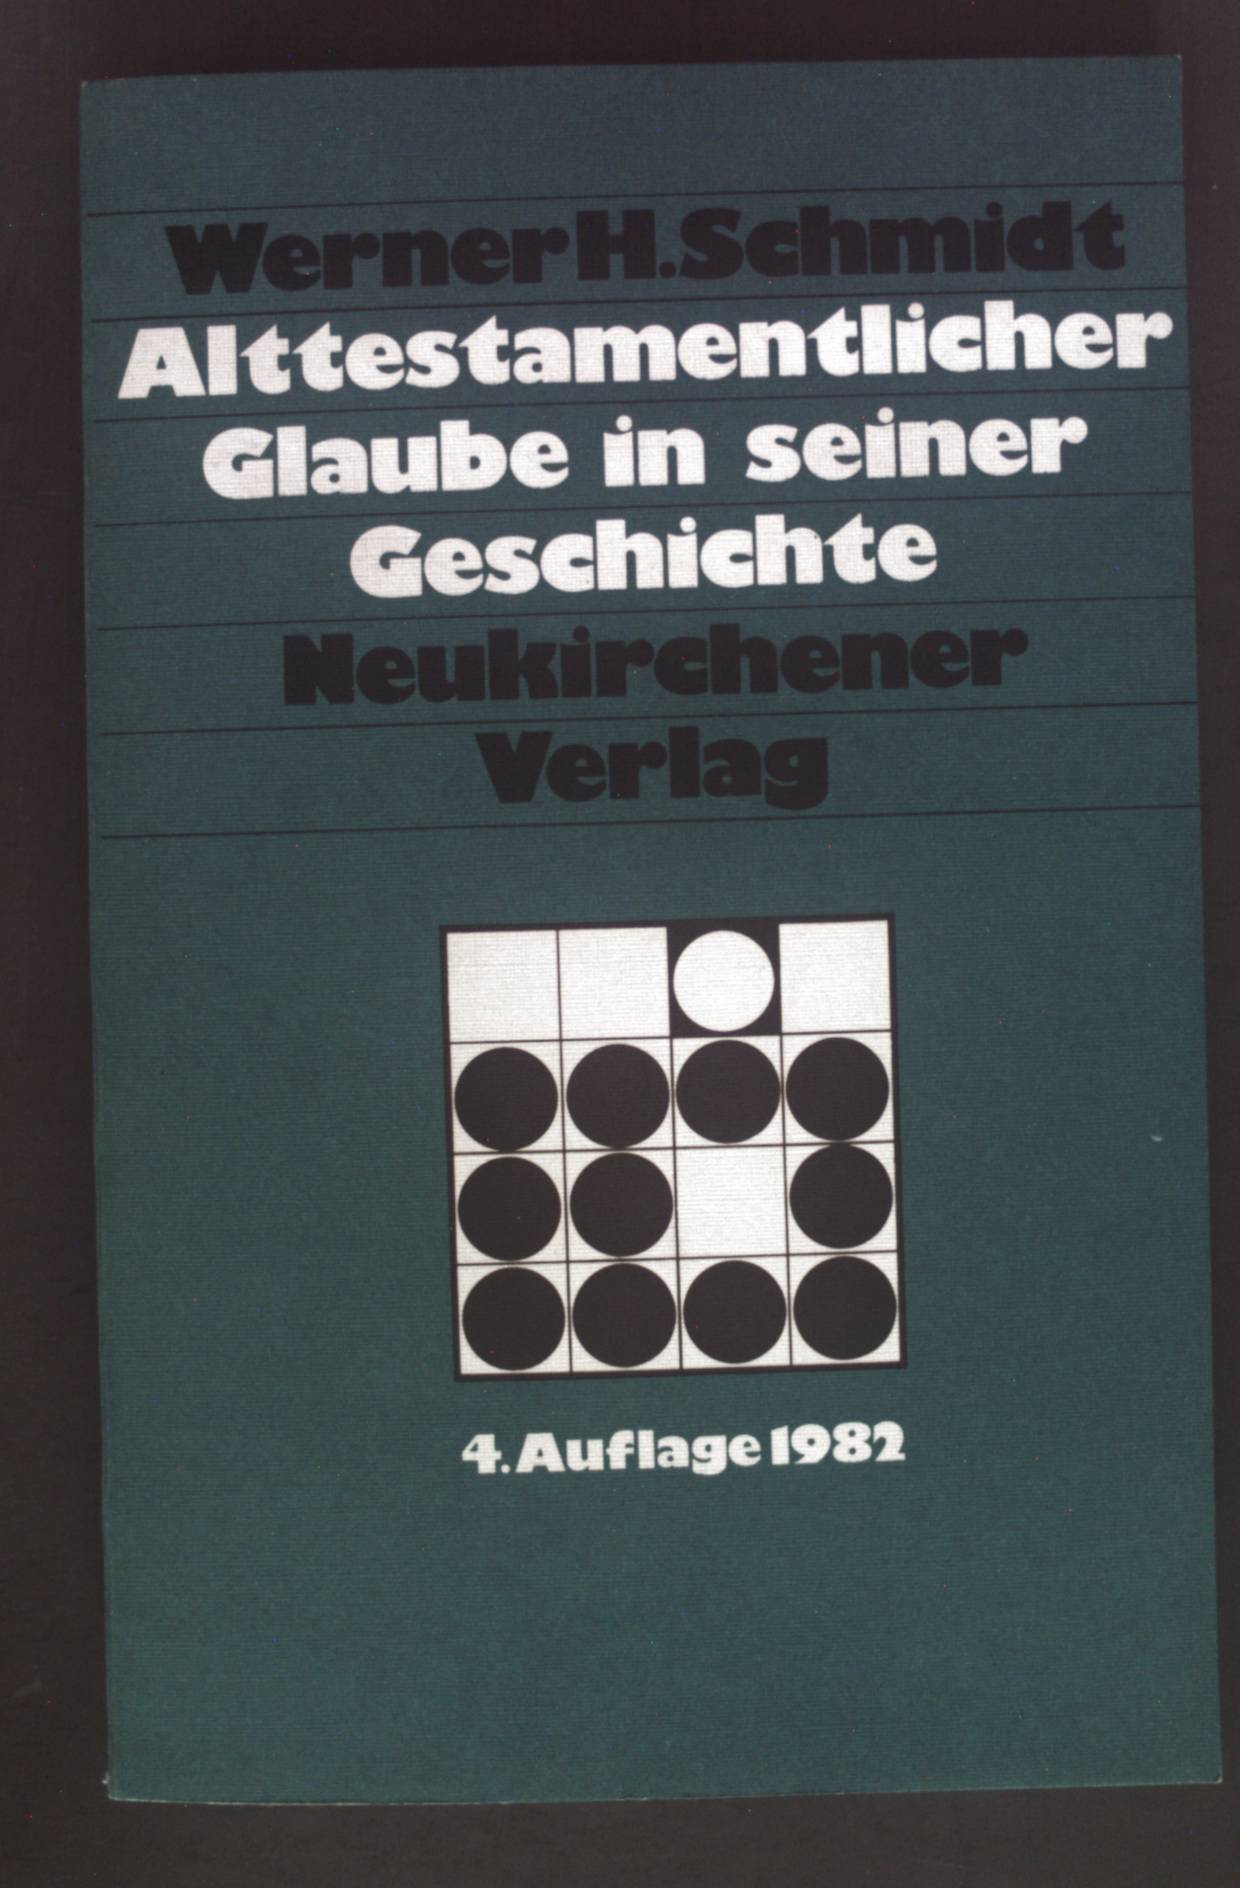 Alttestamentlicher Glaube in seiner Geschichte. Neukirchener Studienbücher ; Bd. 6. - Schmidt, Werner H.